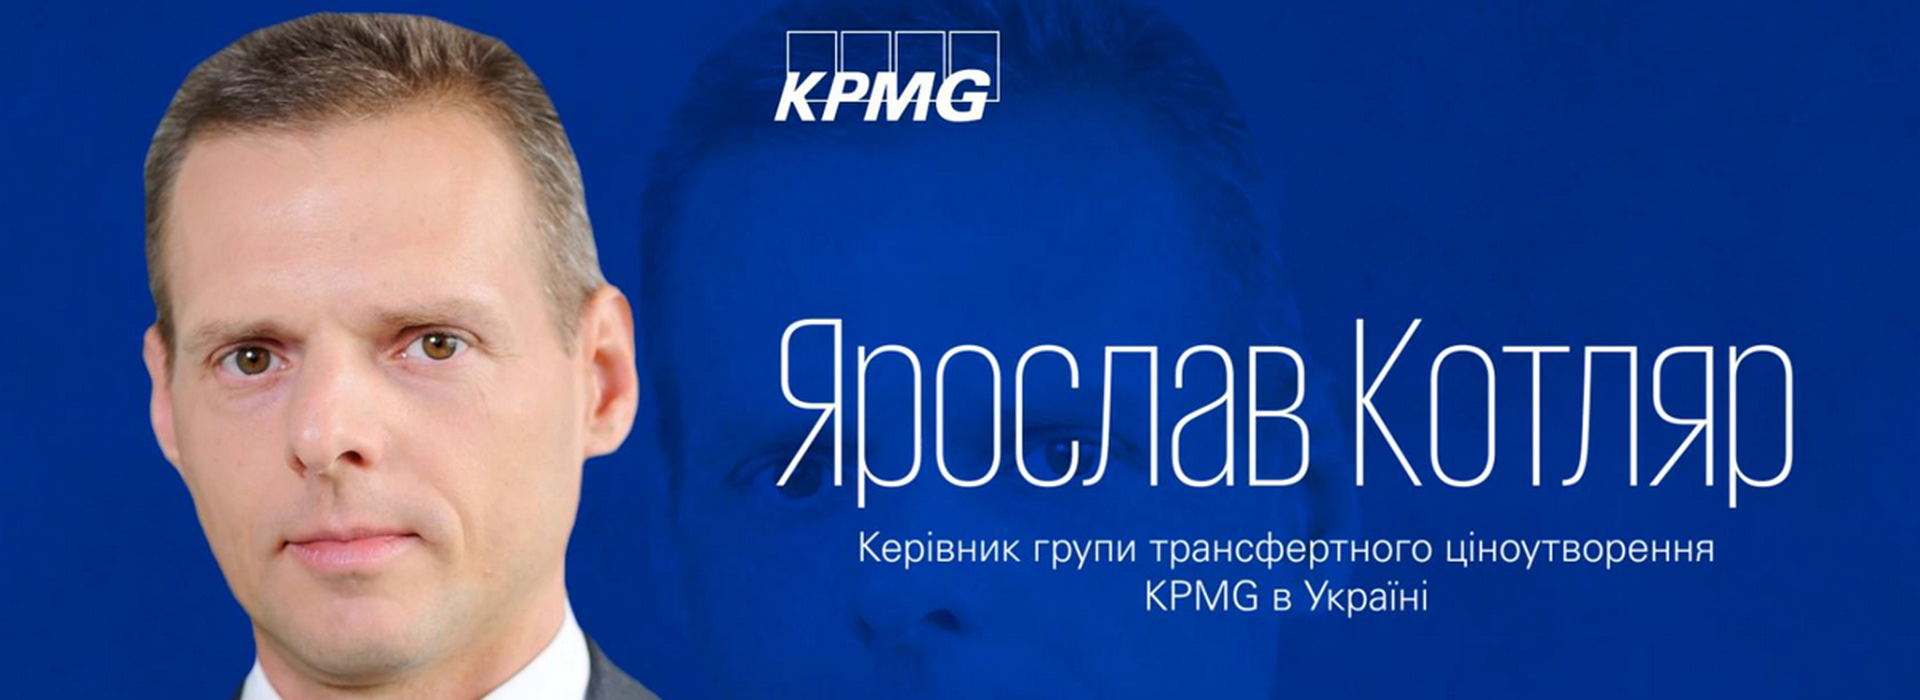 Ярослав Котляр – керівник групи трансфертного ціноутворення в KPMG в Україні